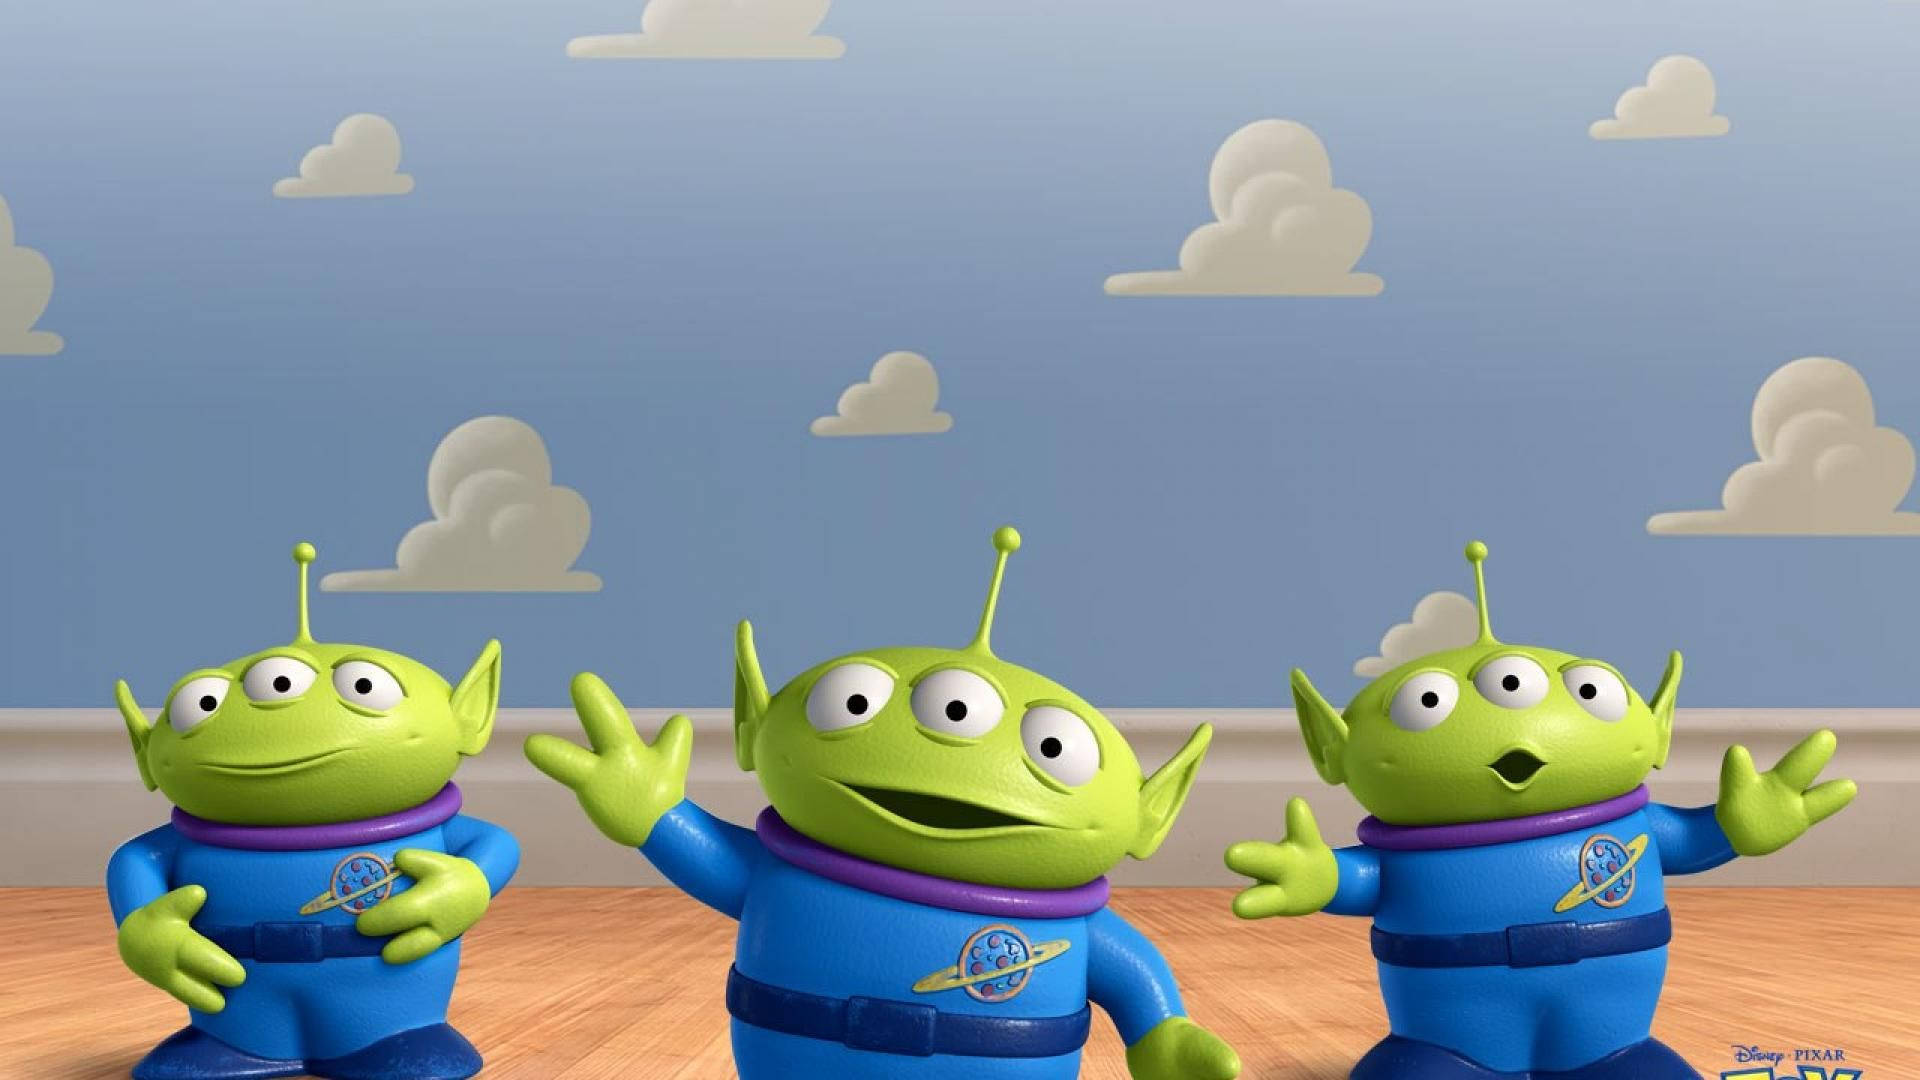 Toy Story Alien Triplets Wallpaper